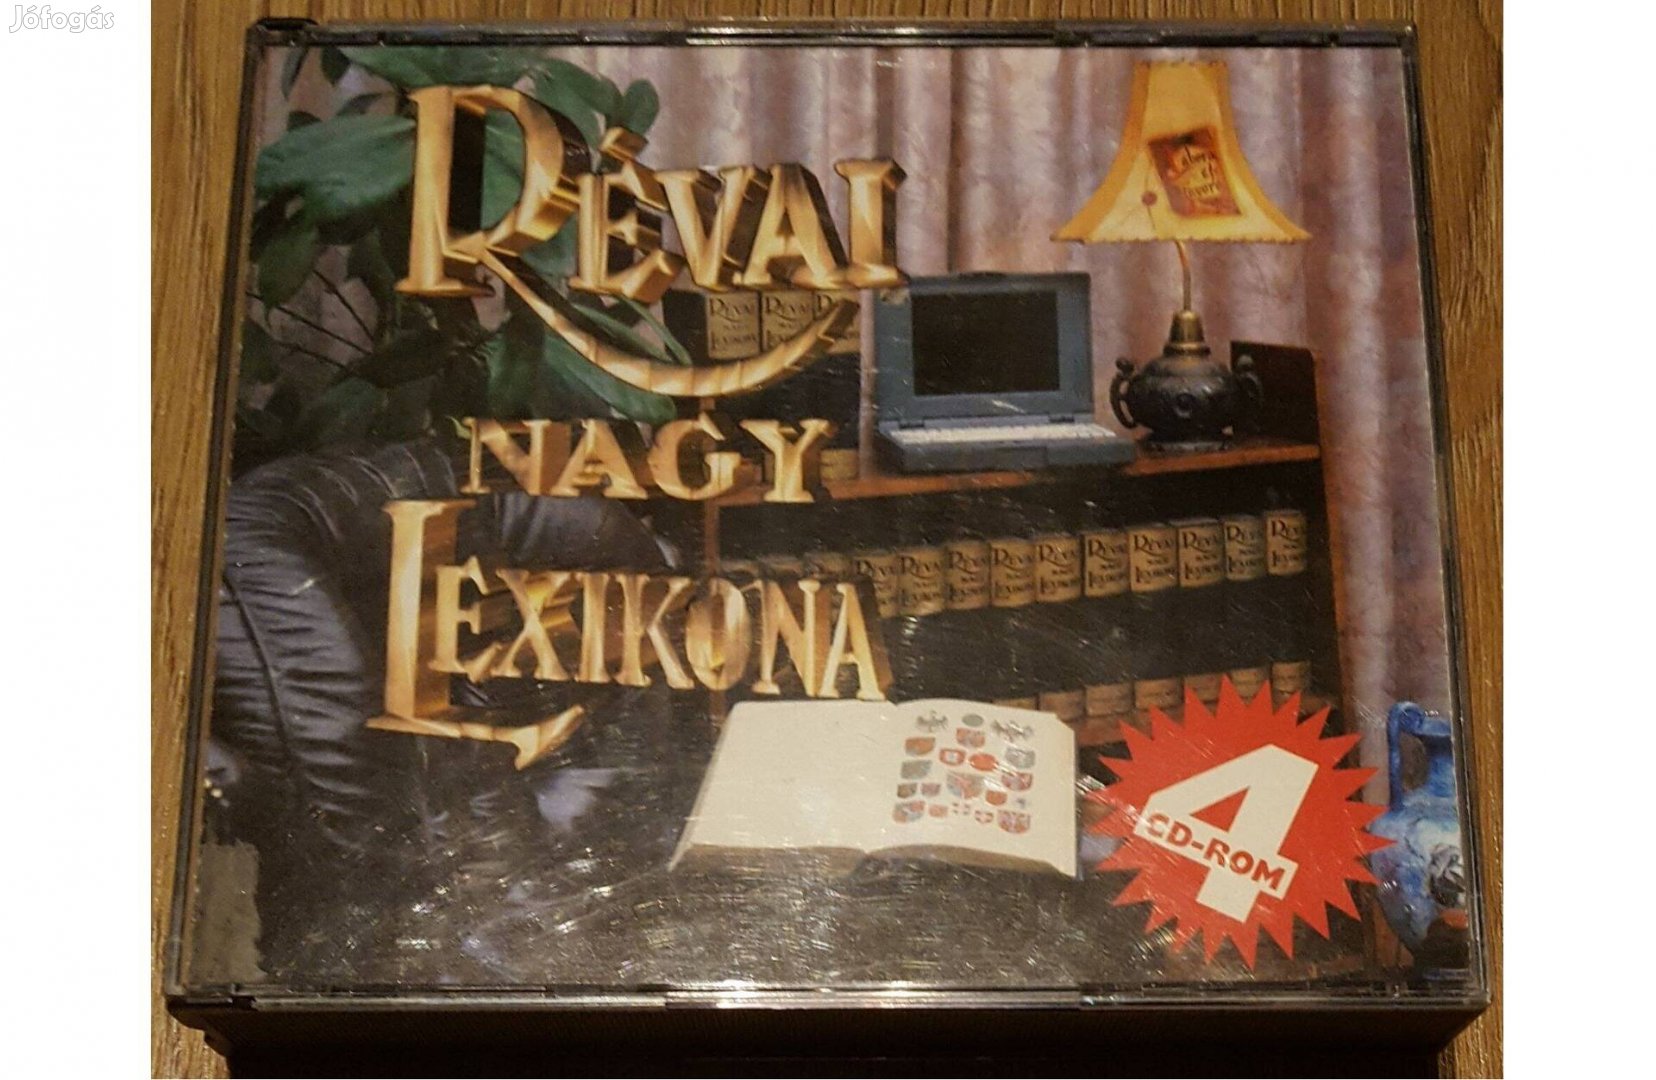 Révai Nagy Lexikona 4 CD-s kiadása 1996-ból